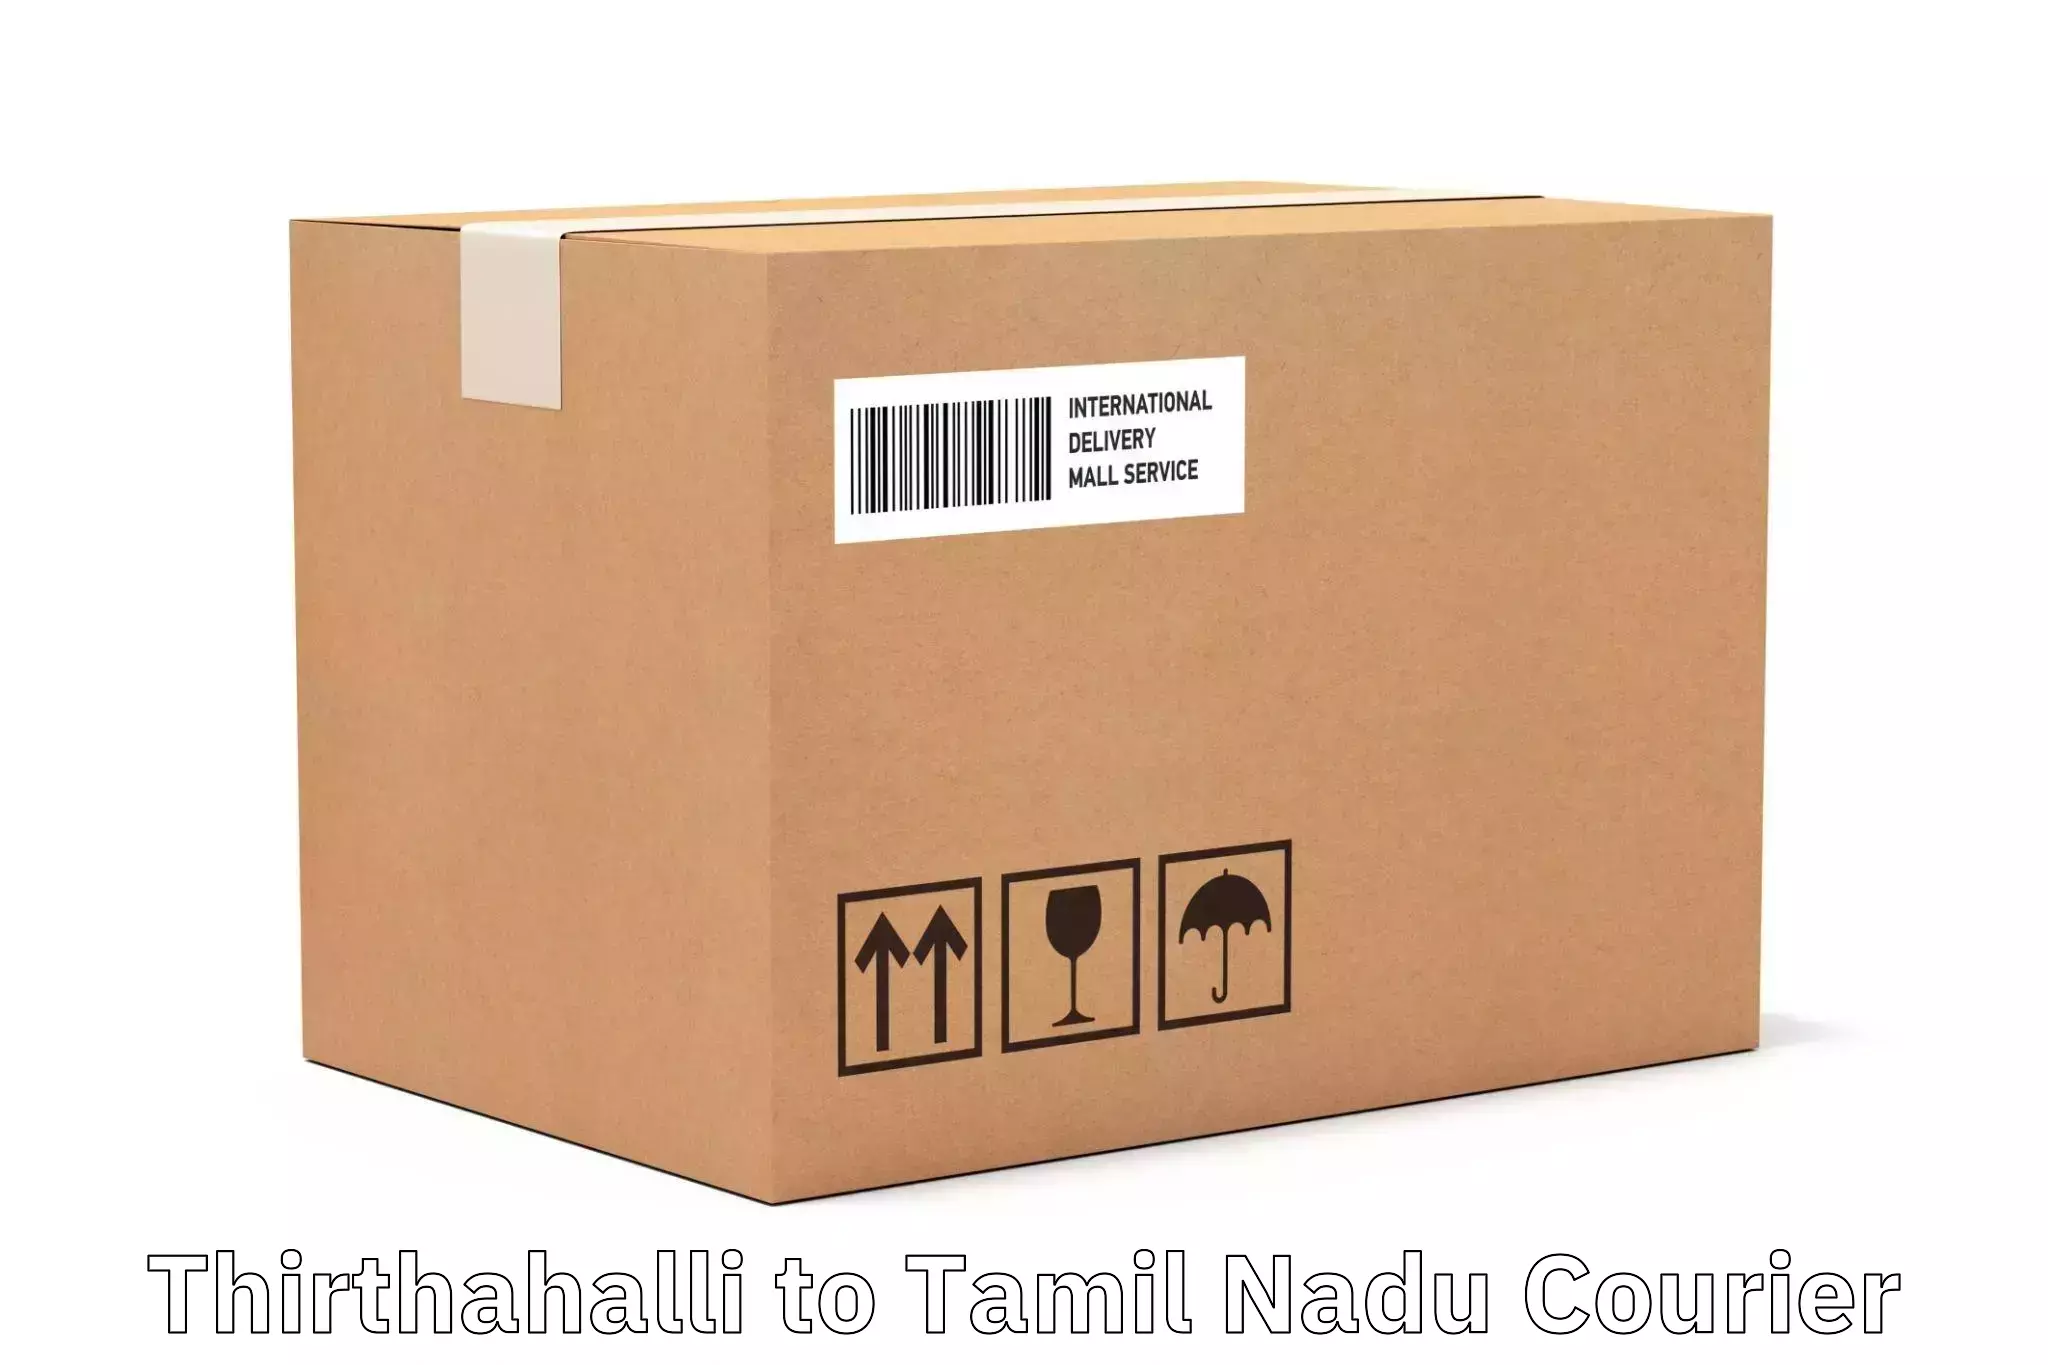 Premium courier services Thirthahalli to Tiruvannamalai